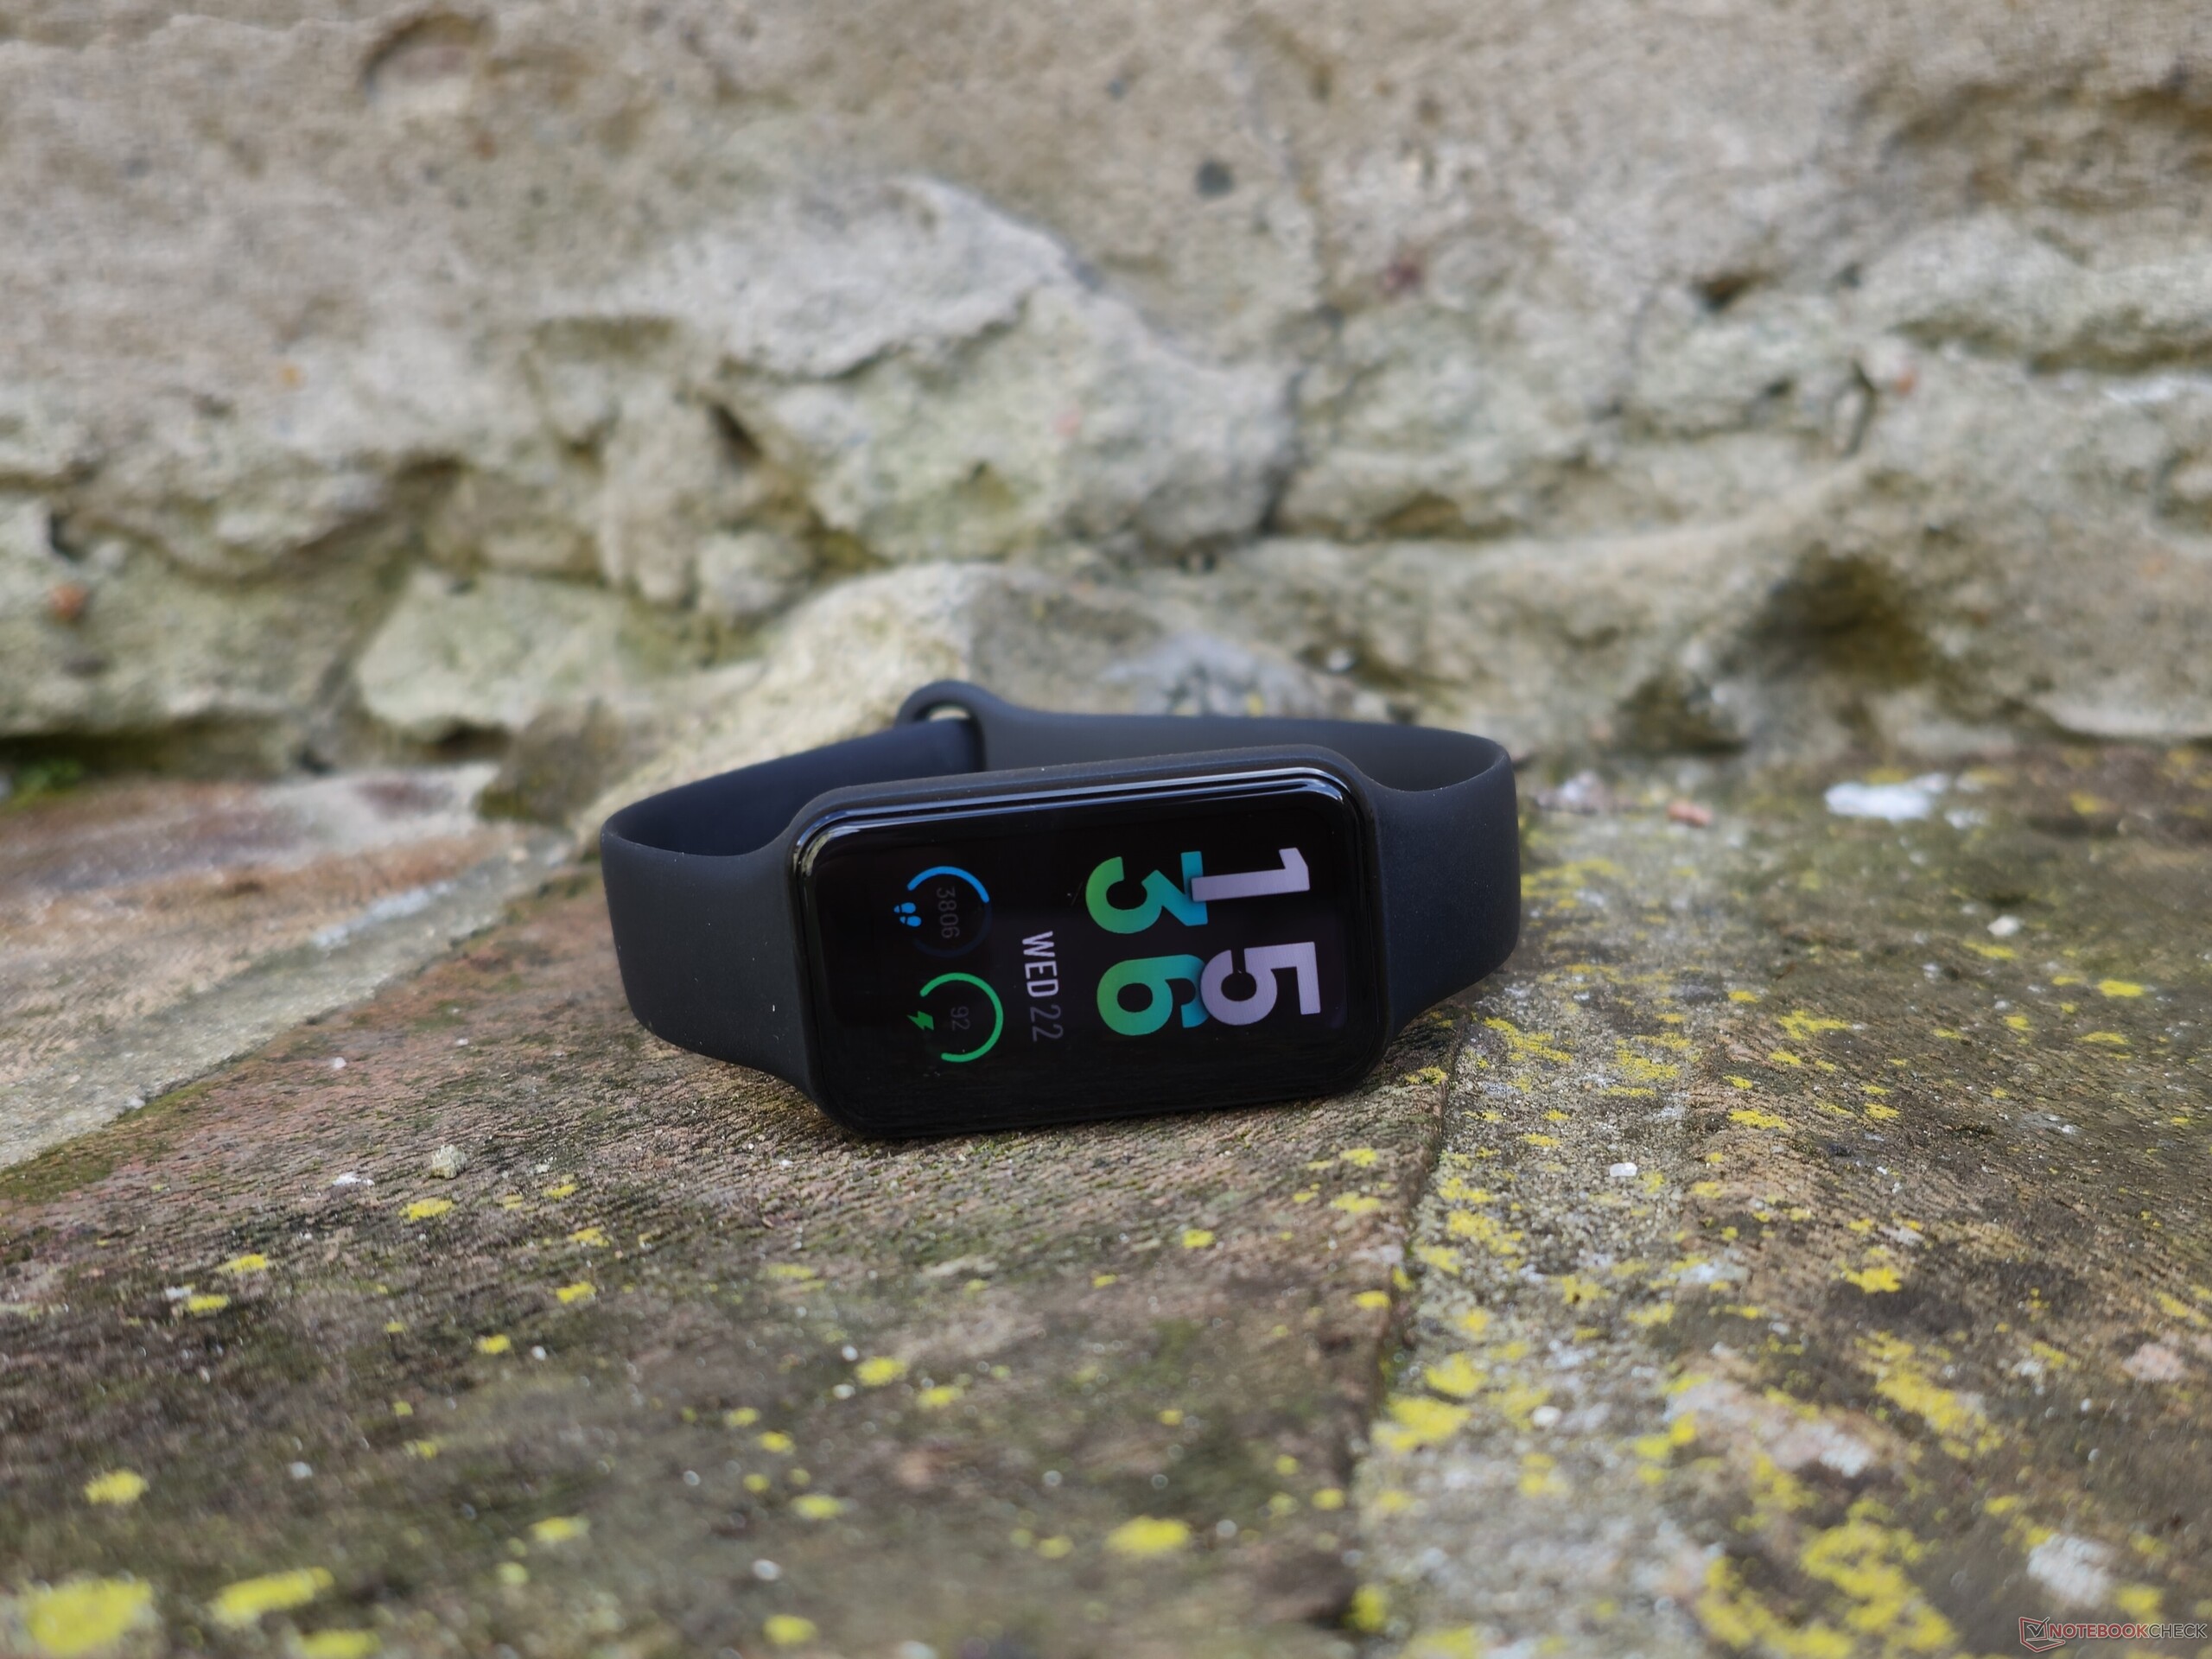  Amazfit Band 5 - Monitor de actividad física con Alexa  incorporado, duración de batería de 15 días, oxígeno en sangre, frecuencia  cardíaca, monitoreo del sueño, seguimiento de la salud de las